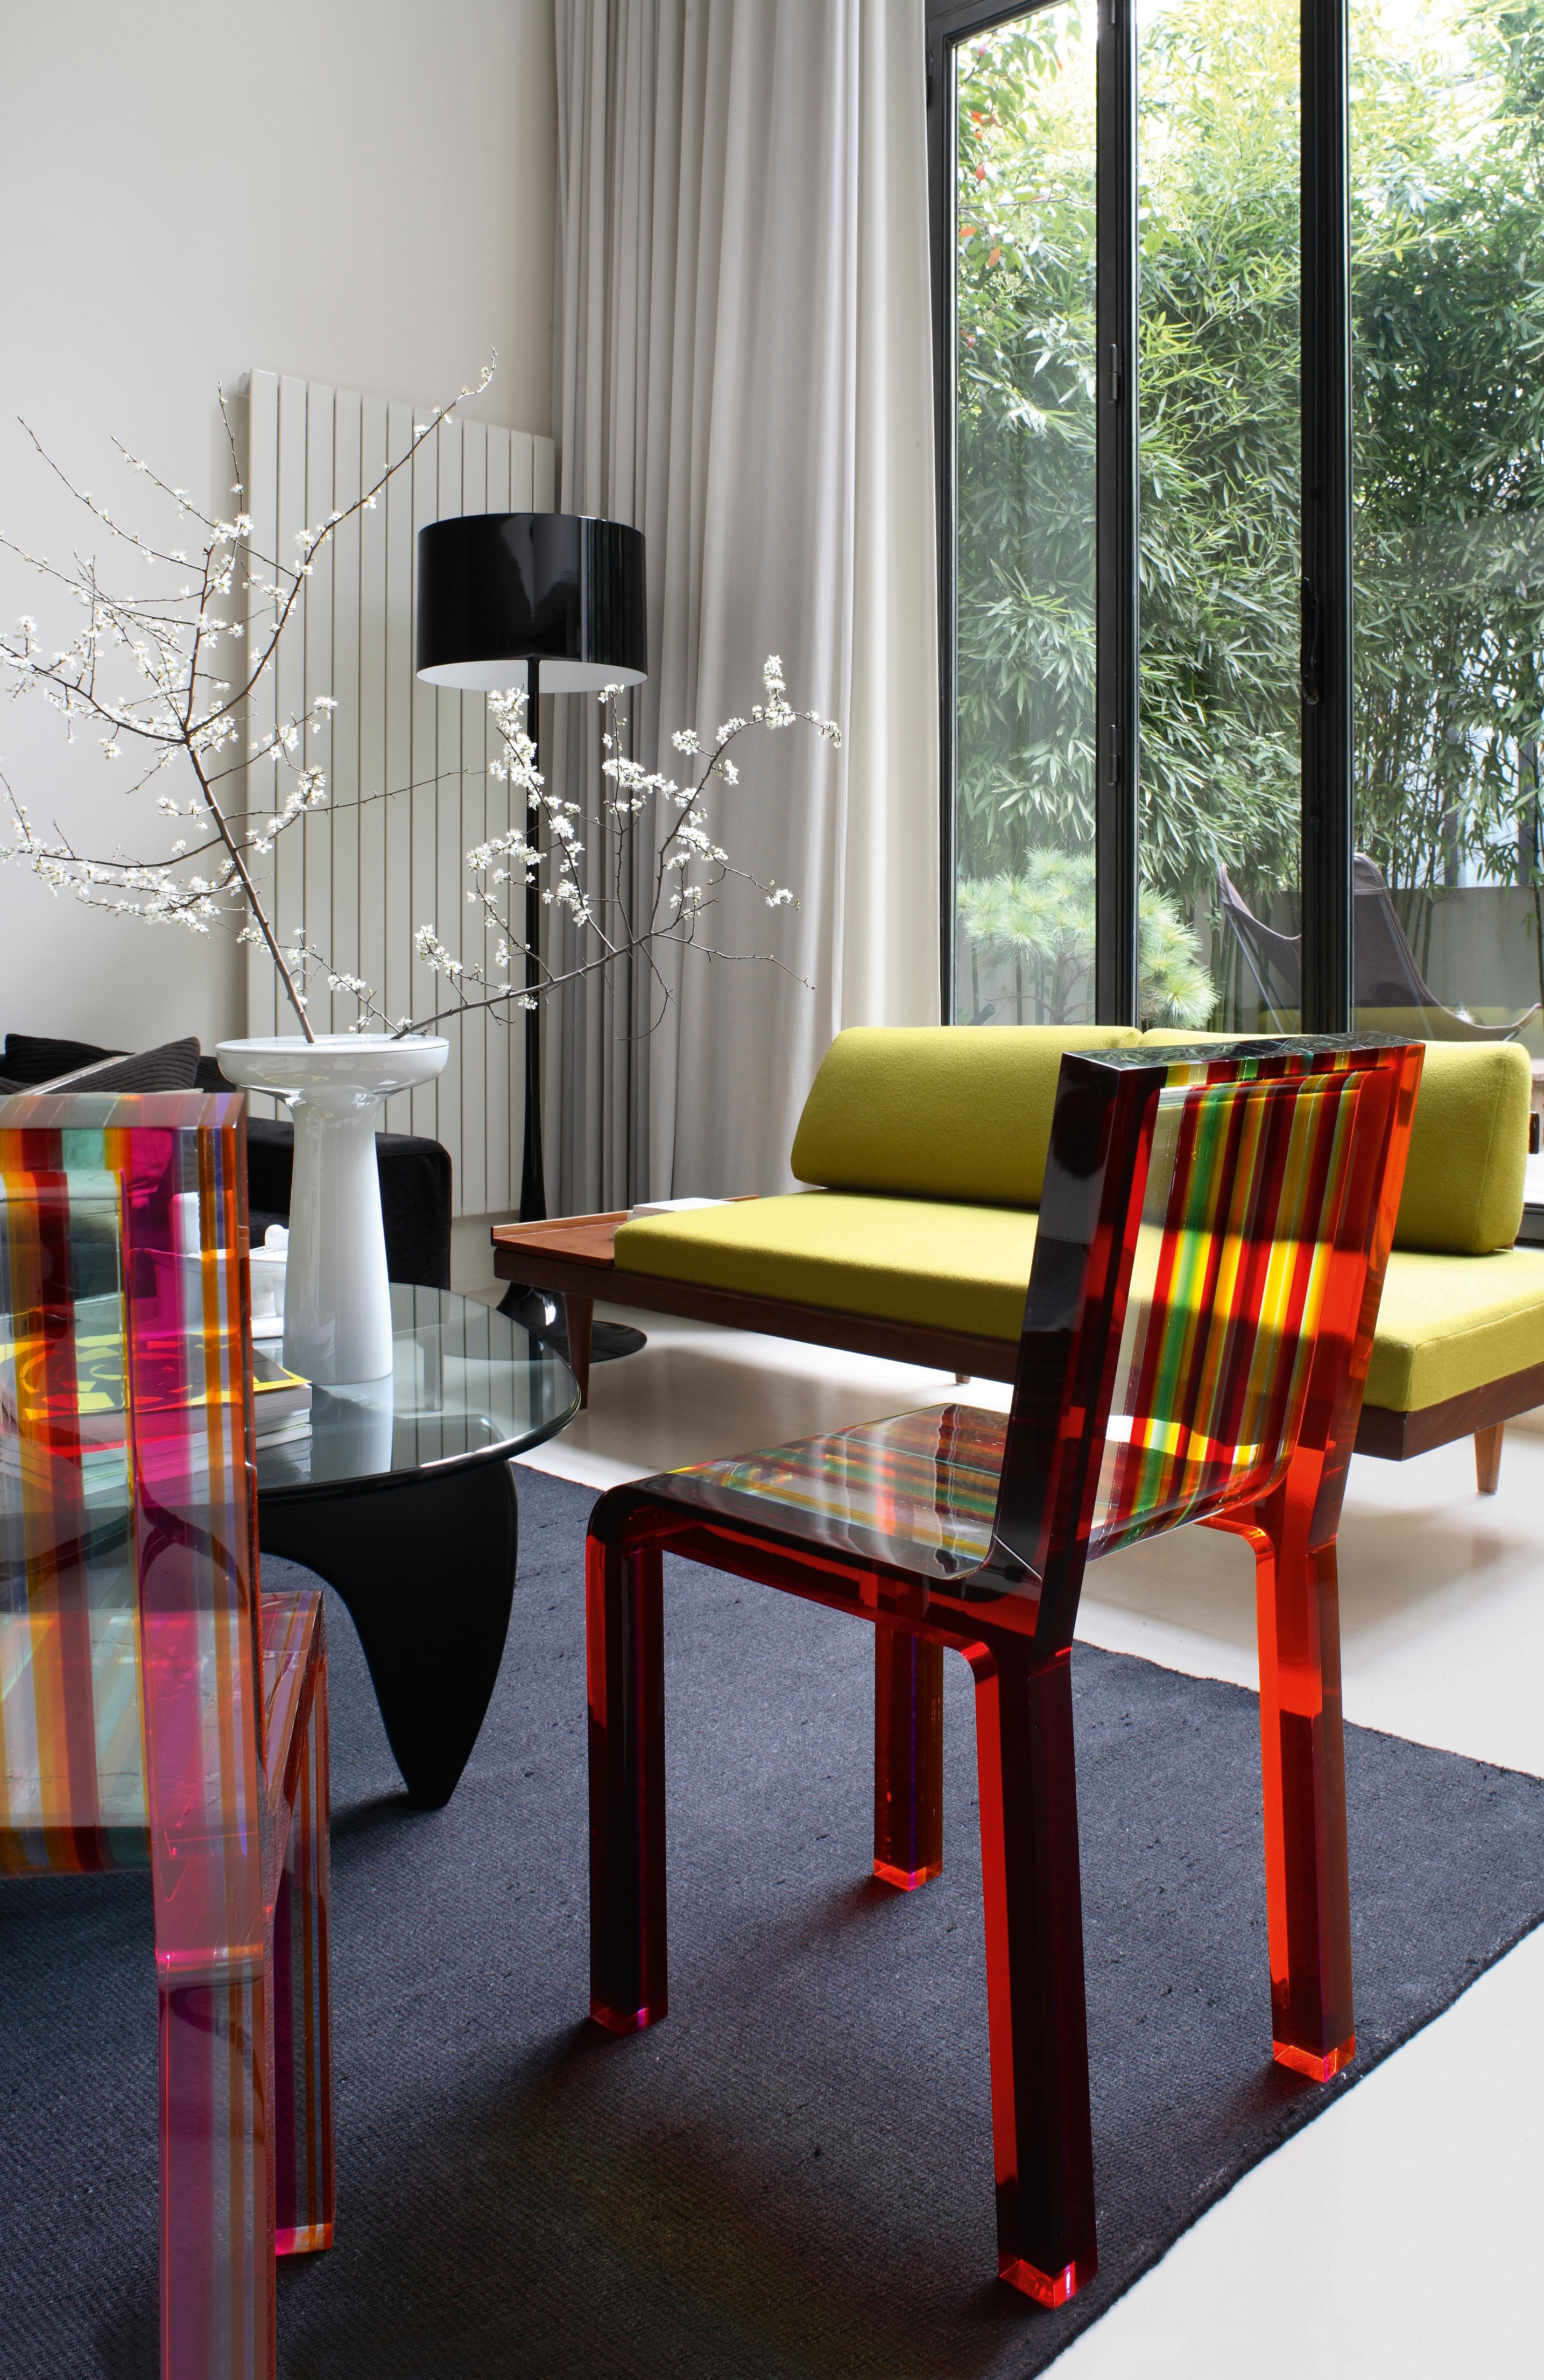 Der Rainbow-Stuhl von Patrick Norguet besteht vollständig aus Acrylharz und enthält Bänder in verschiedenen Farben und Breiten, die mit Ultraschall miteinander verschmolzen sind. Der Kontrast zwischen den essentiellen Linien und der Farbexplosion